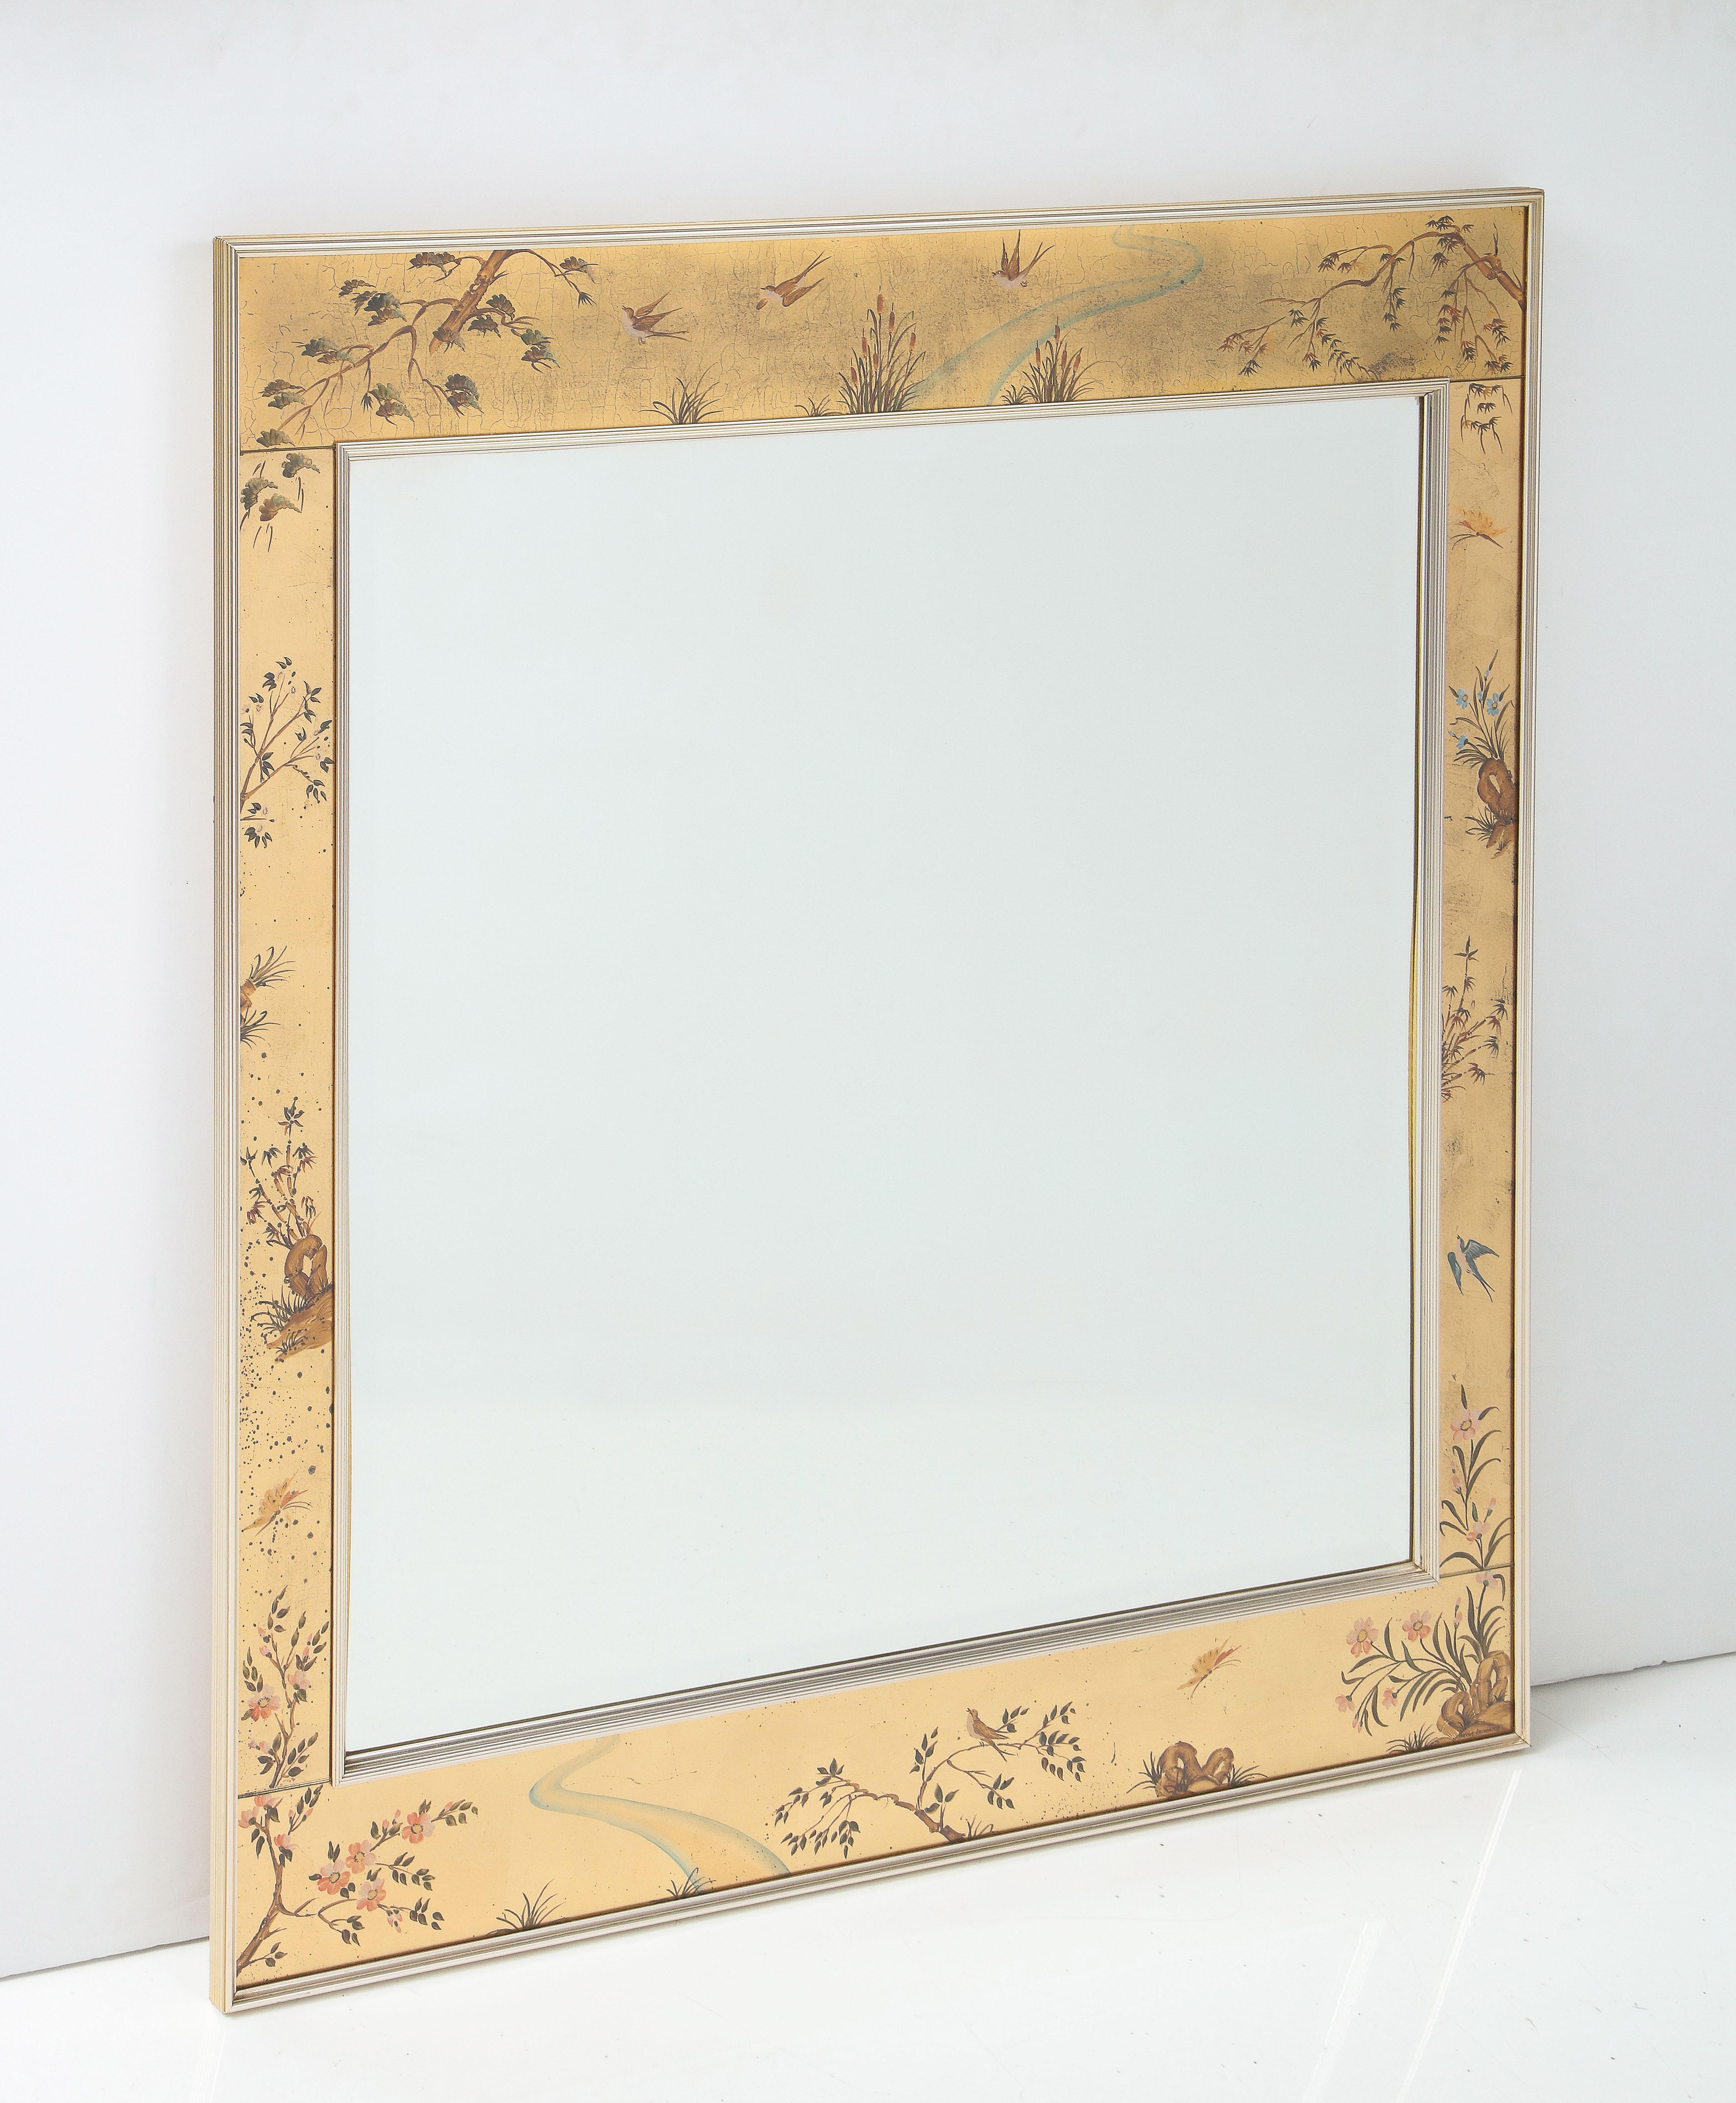 Der Chinoiserie-Spiegel von LaBarge zeichnet sich durch eglomisierte, handbemalte Glasscheiben und handaufgetragenes Blattgold aus. Die Spiegelfläche ist abgeschrägt und befindet sich in einem dünnen Messingrahmen.